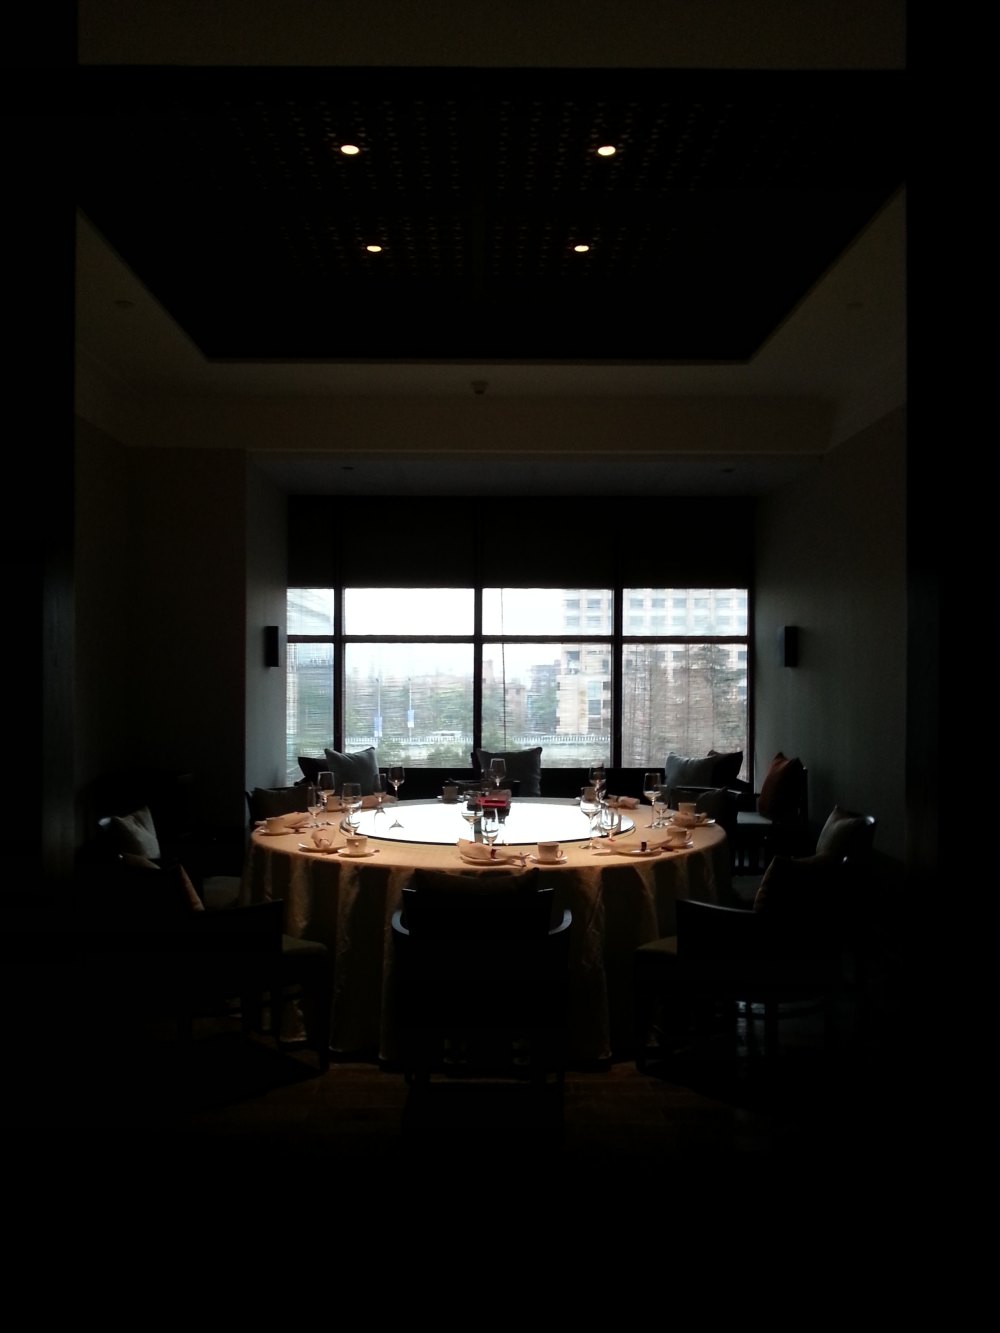 上海晶采轩餐厅--JAYA新作_20140104_123457.jpg